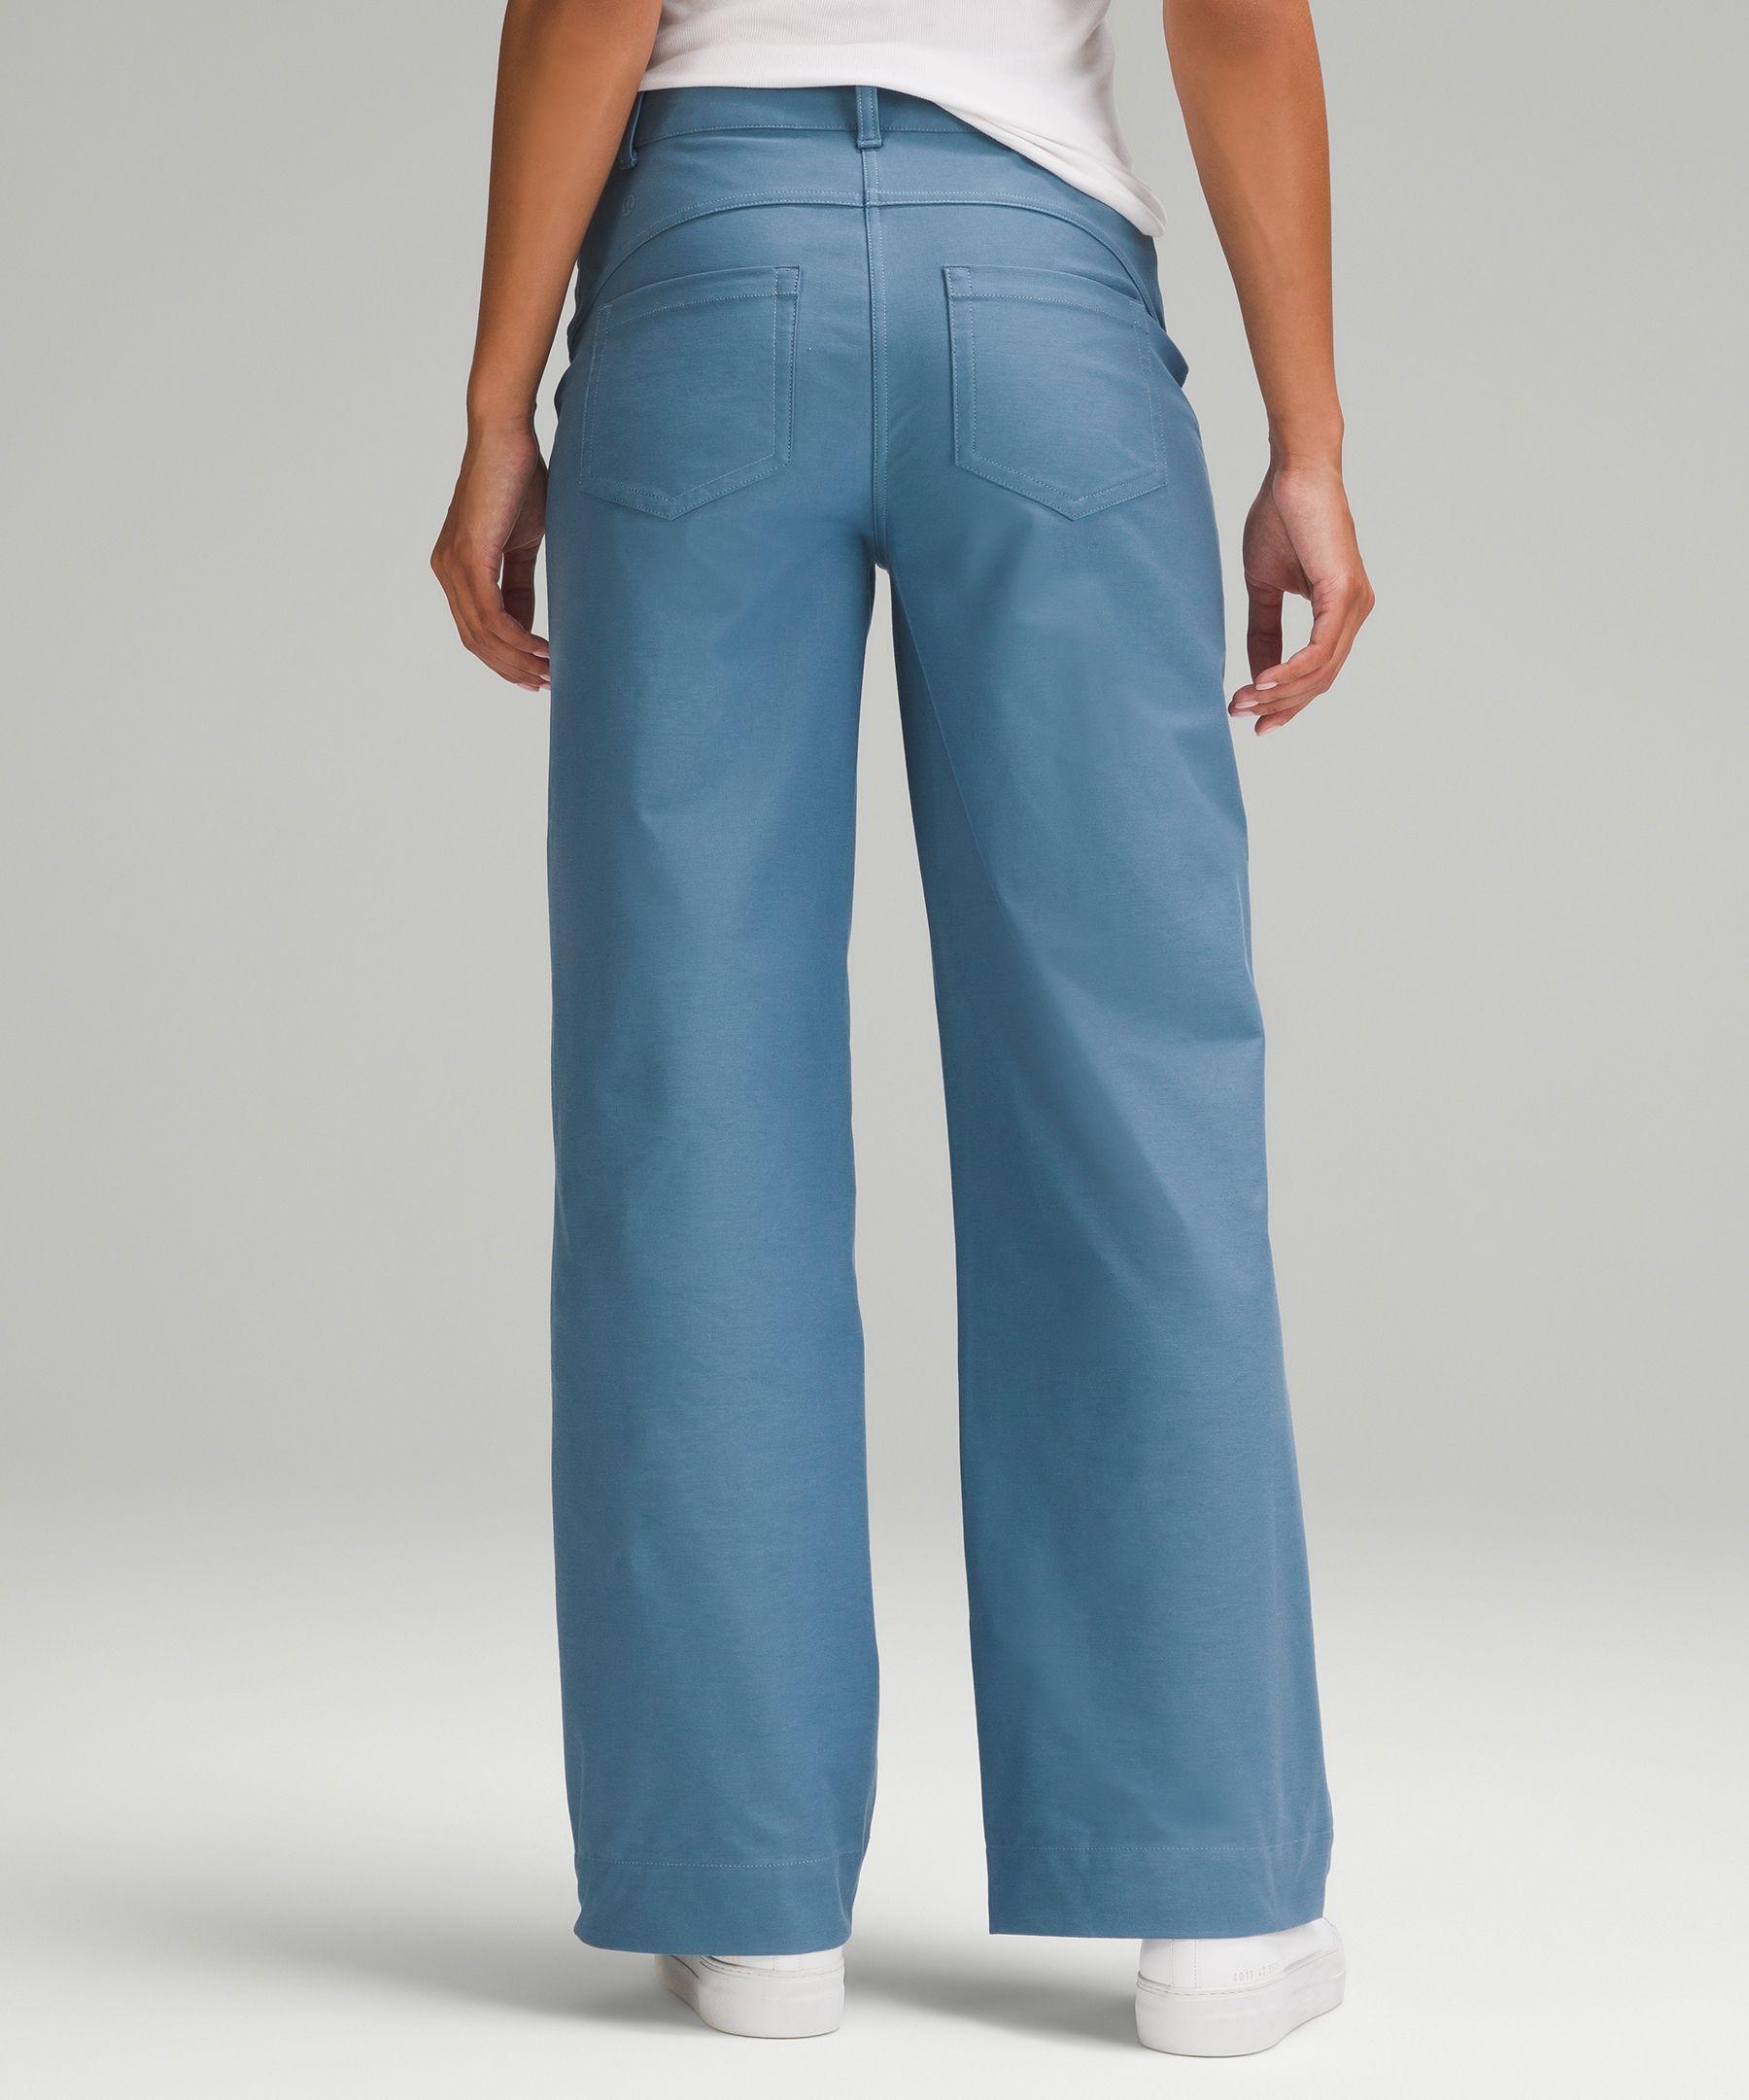 Lululemon, Women's Navy Blue City Five Pocket Pants